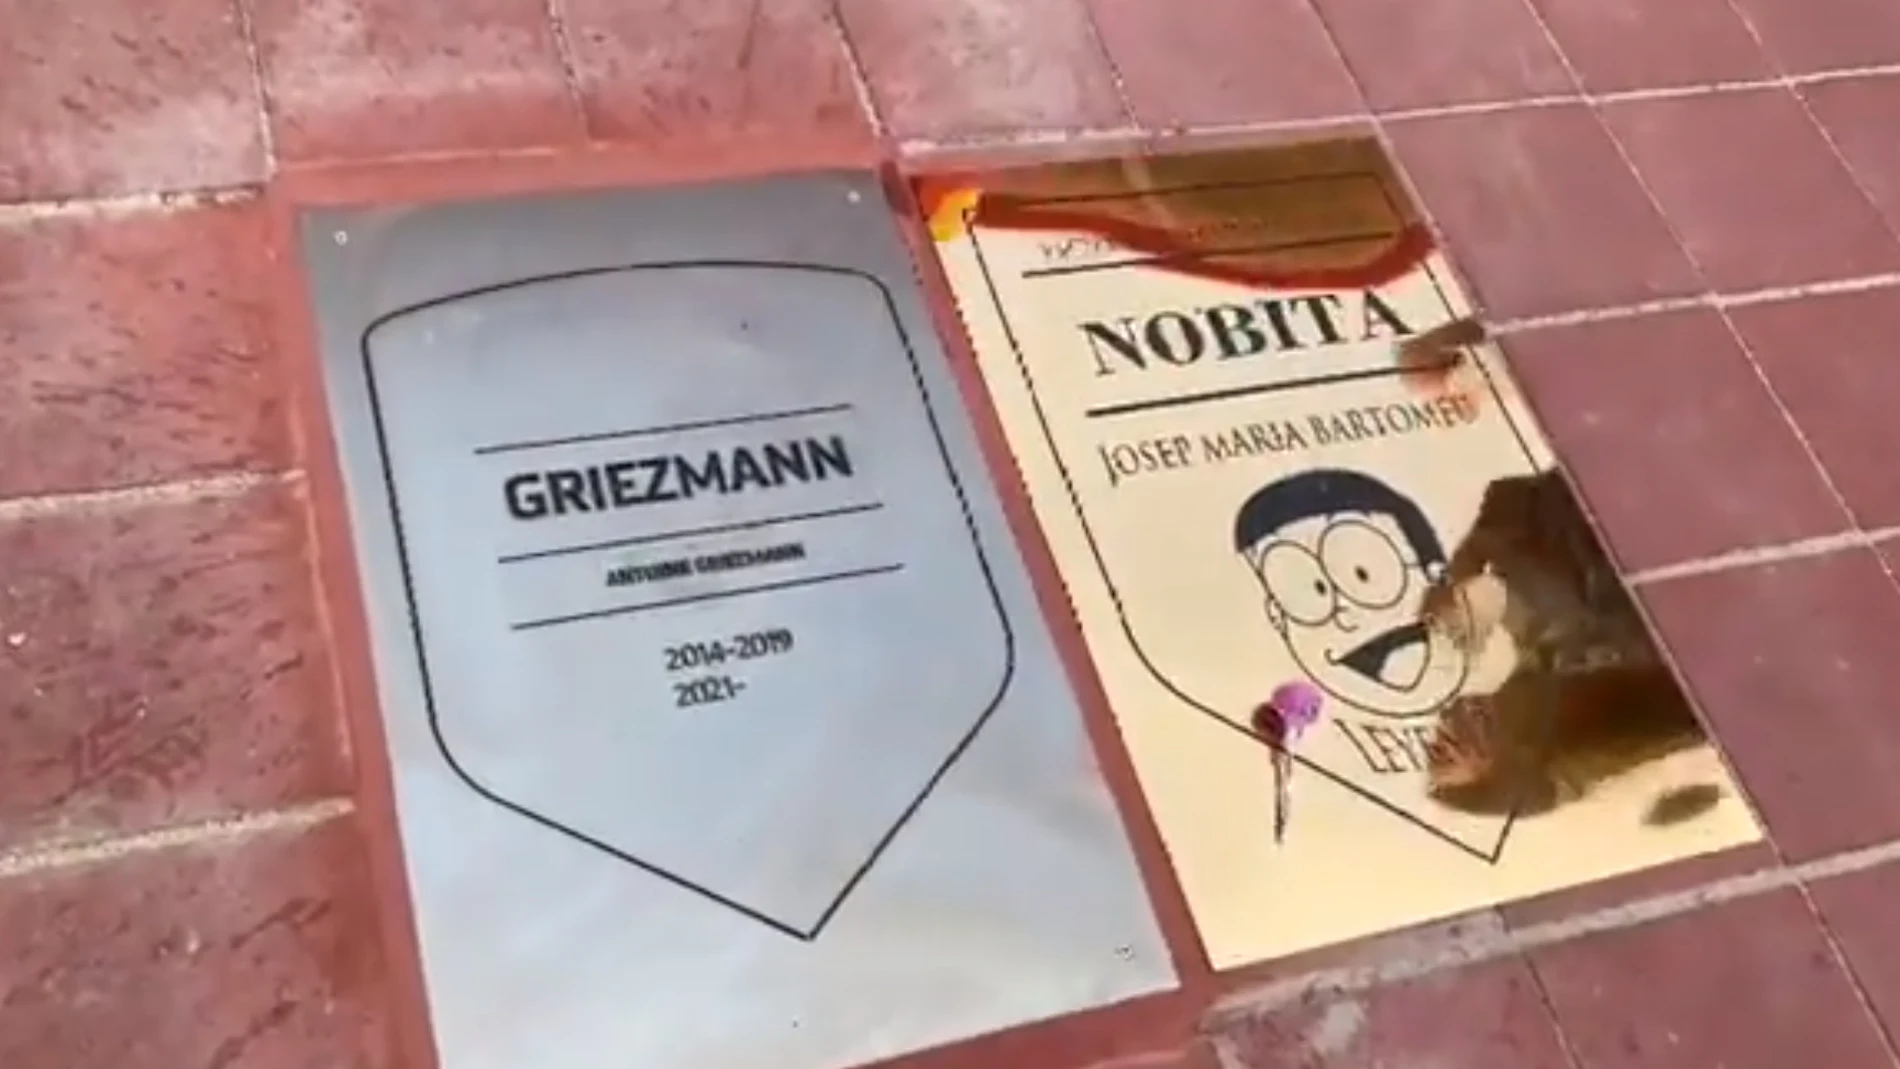 La placa de Josep María Bartomeu &#39;Nobita&#39;, junto a Griezmann